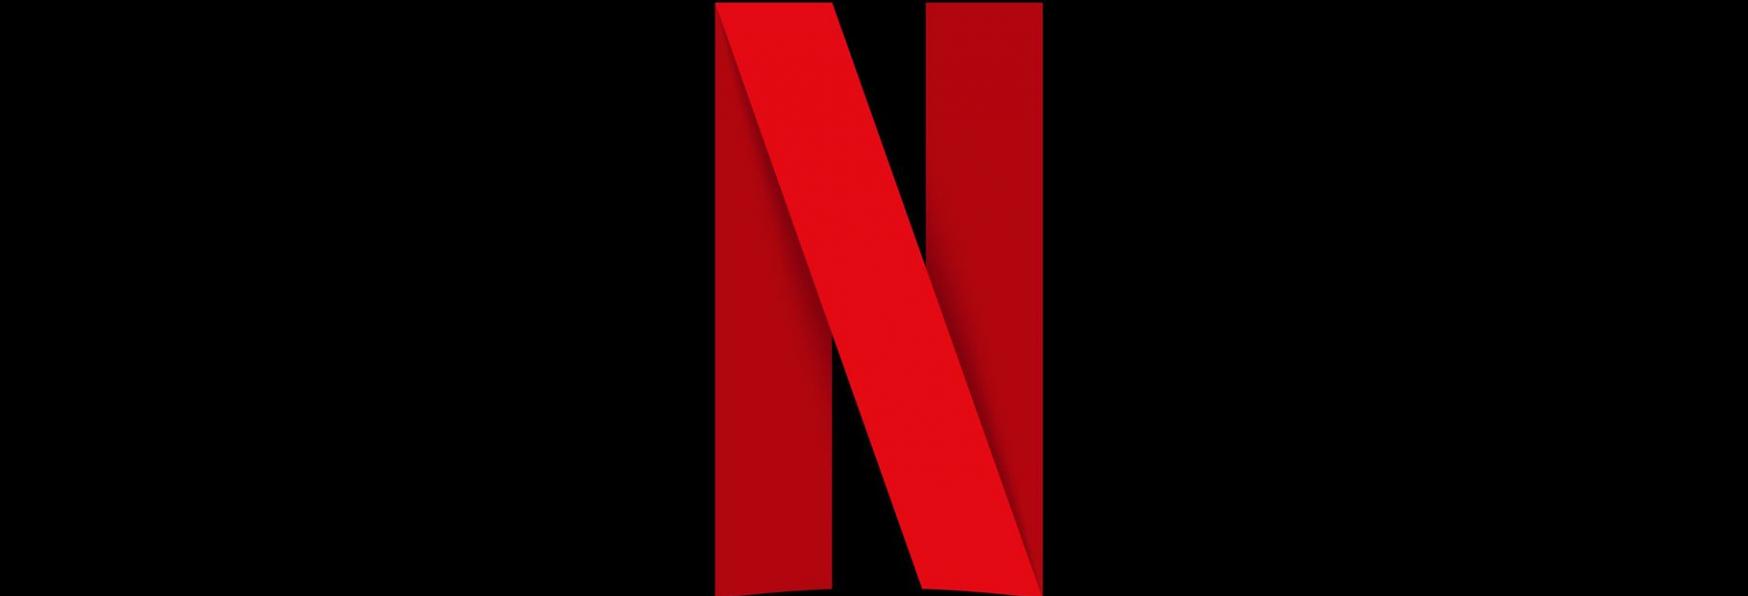 In America Netflix Aumenta il Costo dei Piani di Abbonamento. Succederà anche in Italia?